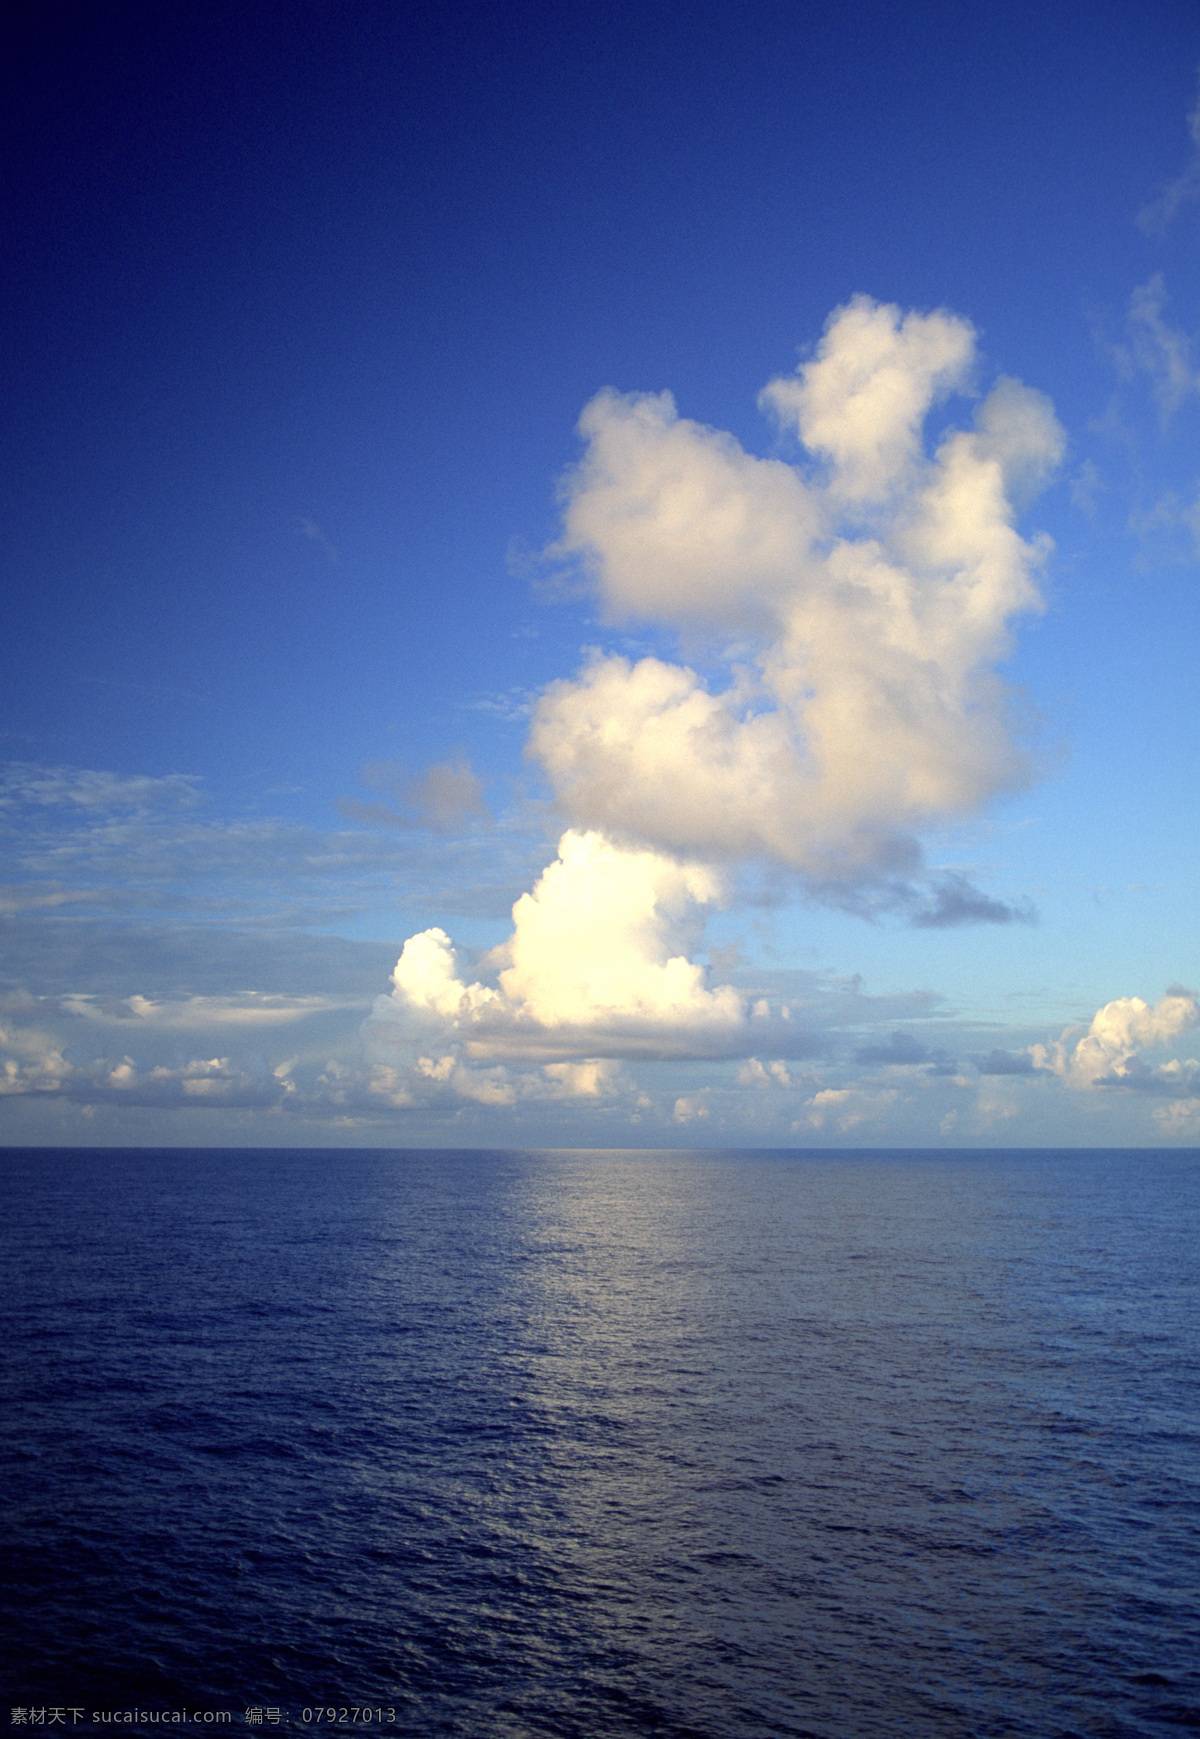 蓝天 白云 下 平静 湖面 风景图 海边大海 天空 生态环境 自然风景 自然景观 平静的湖面 一望无际 海平面 蓝天白云 风景图片